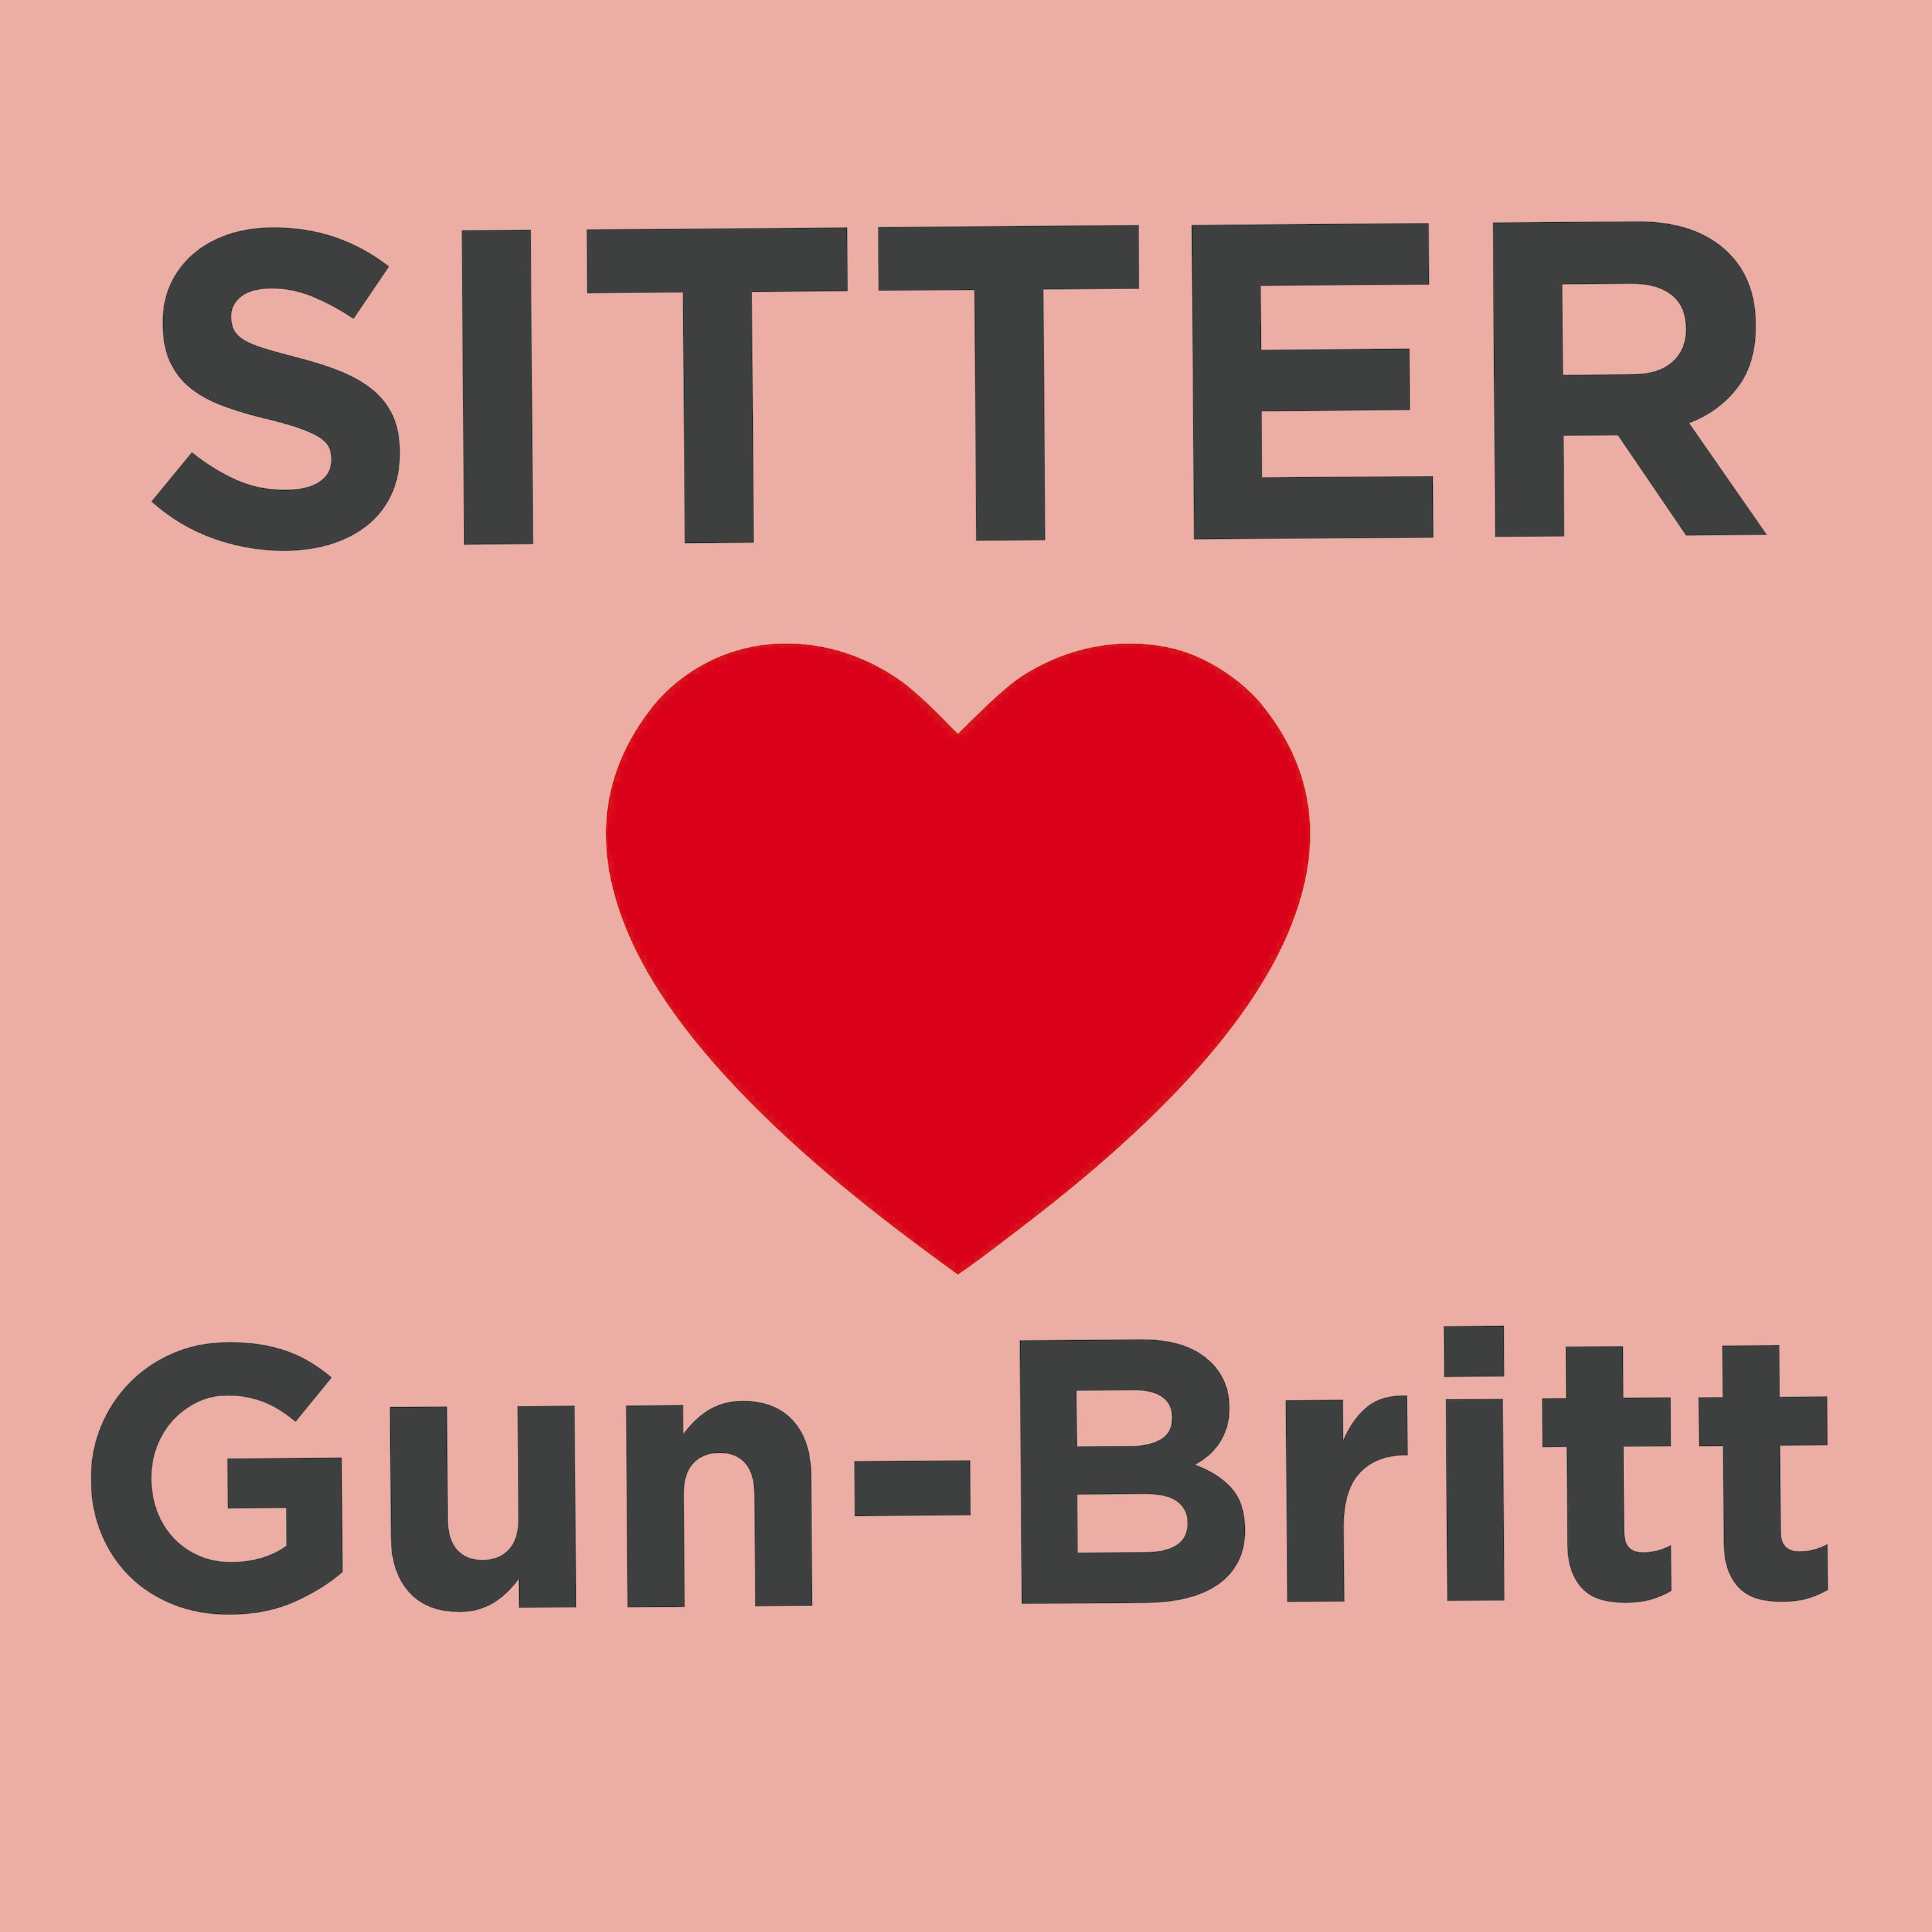 Sitter Elsker: Gun-Britt